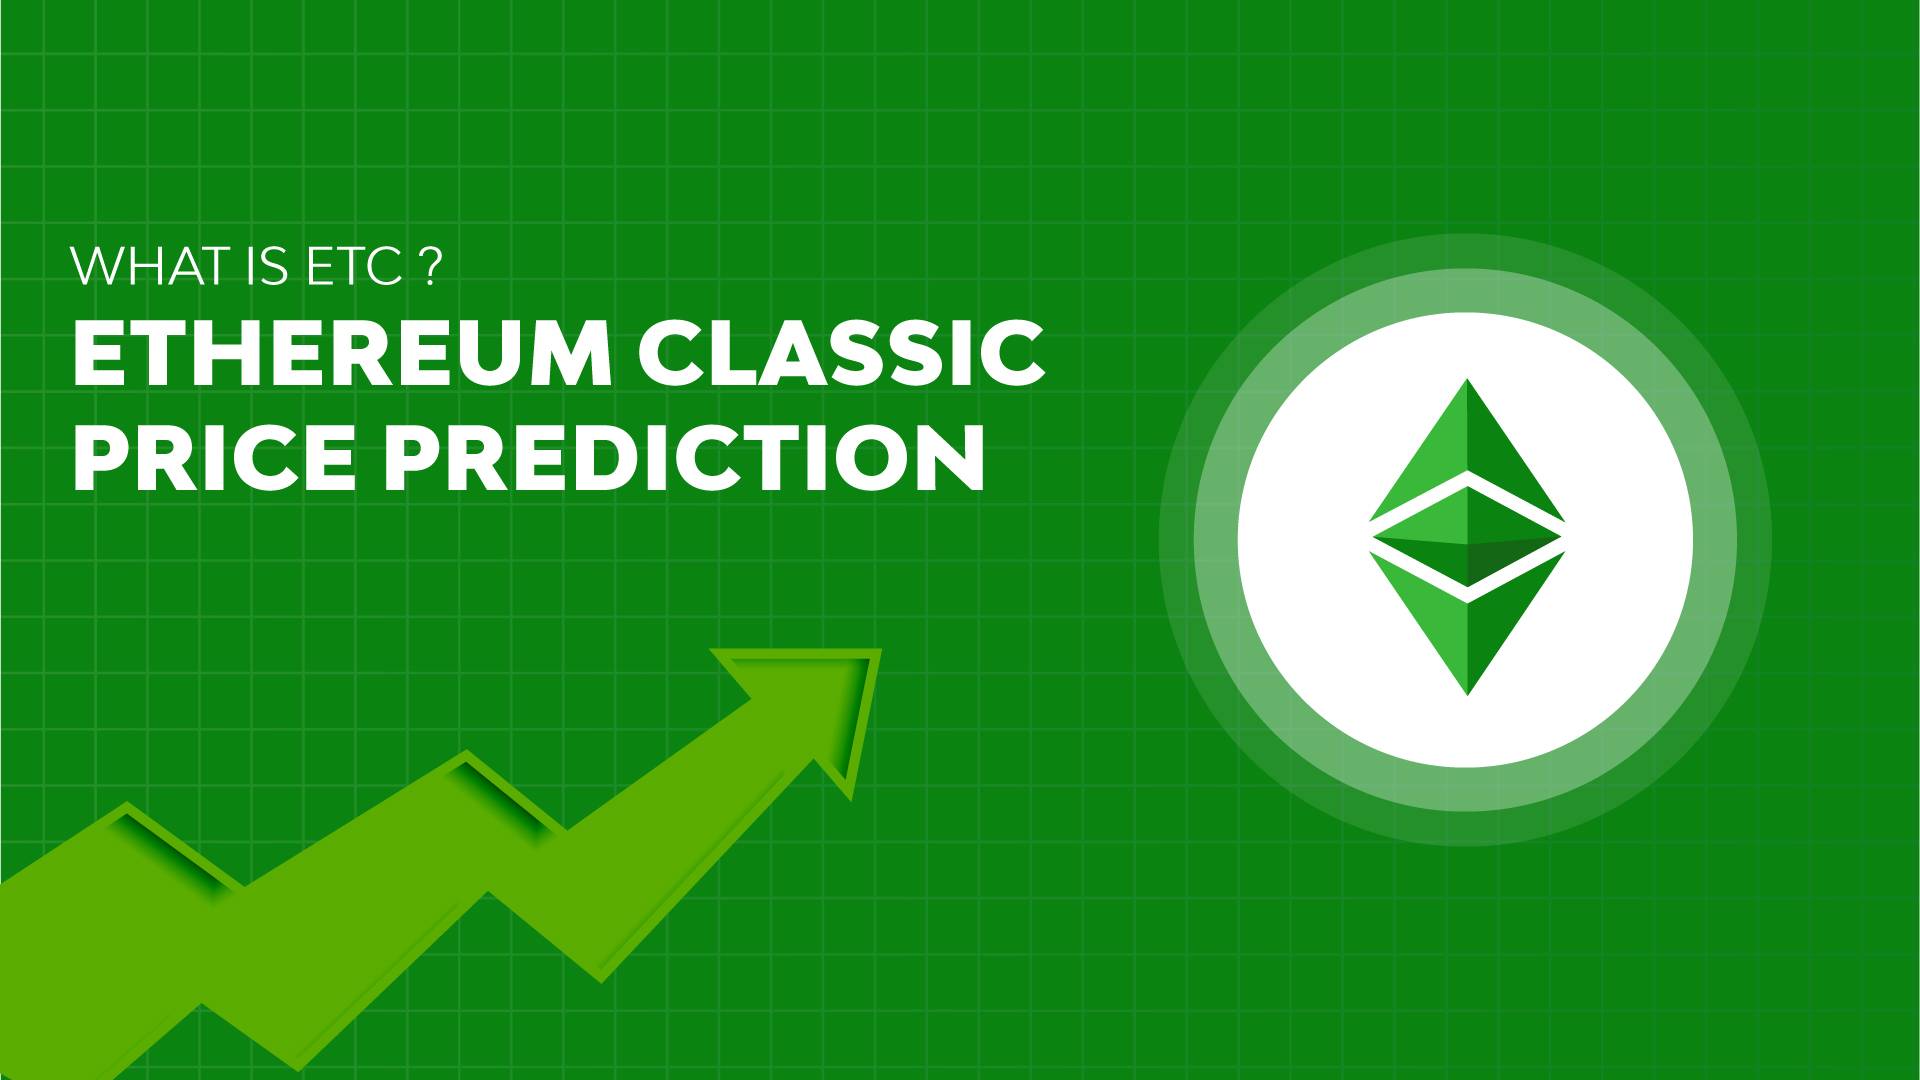 Ethereum classic price prediction